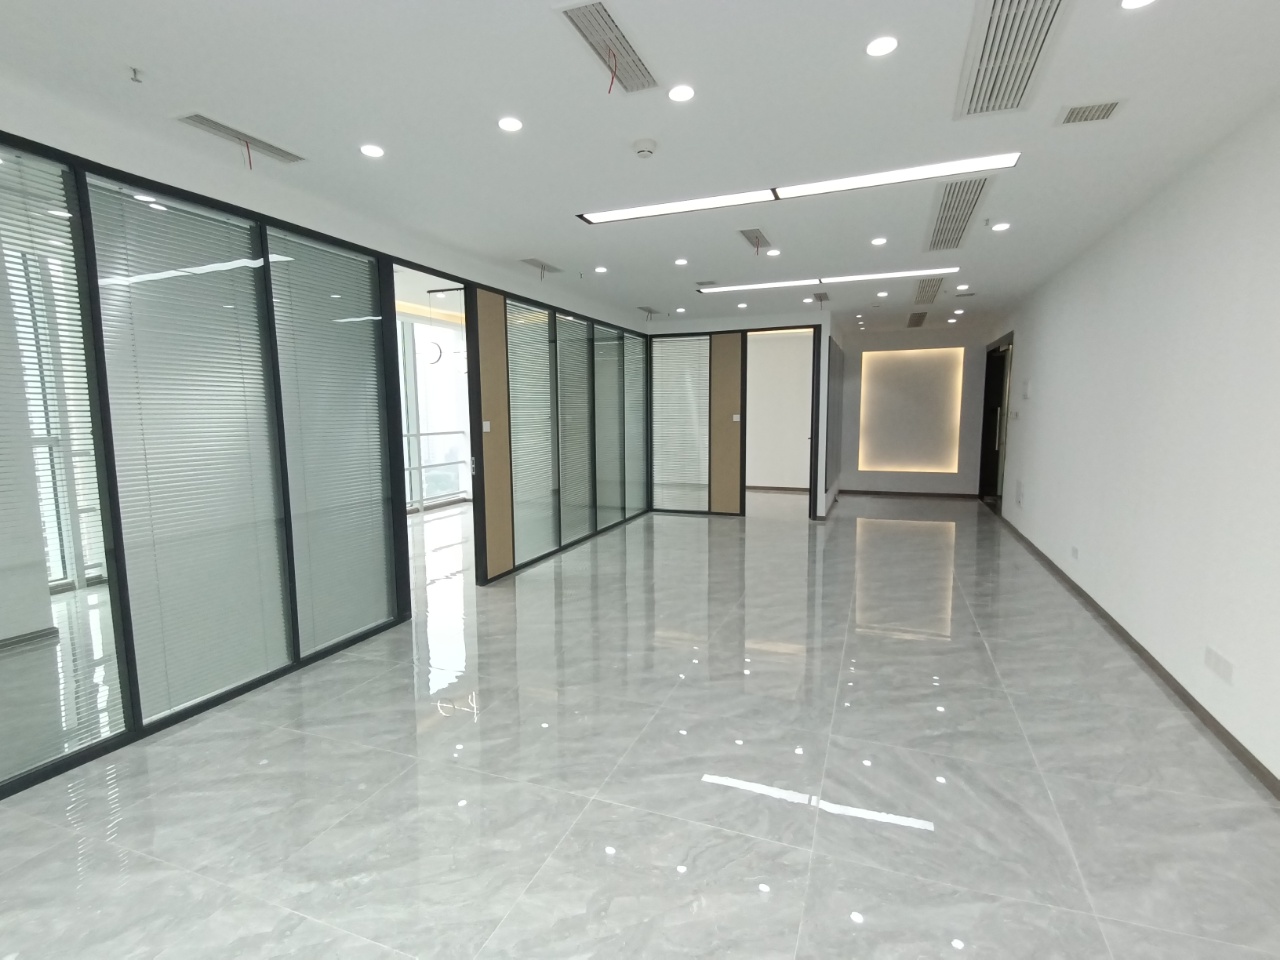 【精品】奥园广场151平米丨大纵深户型办公空间丨玻璃隔断采光通透